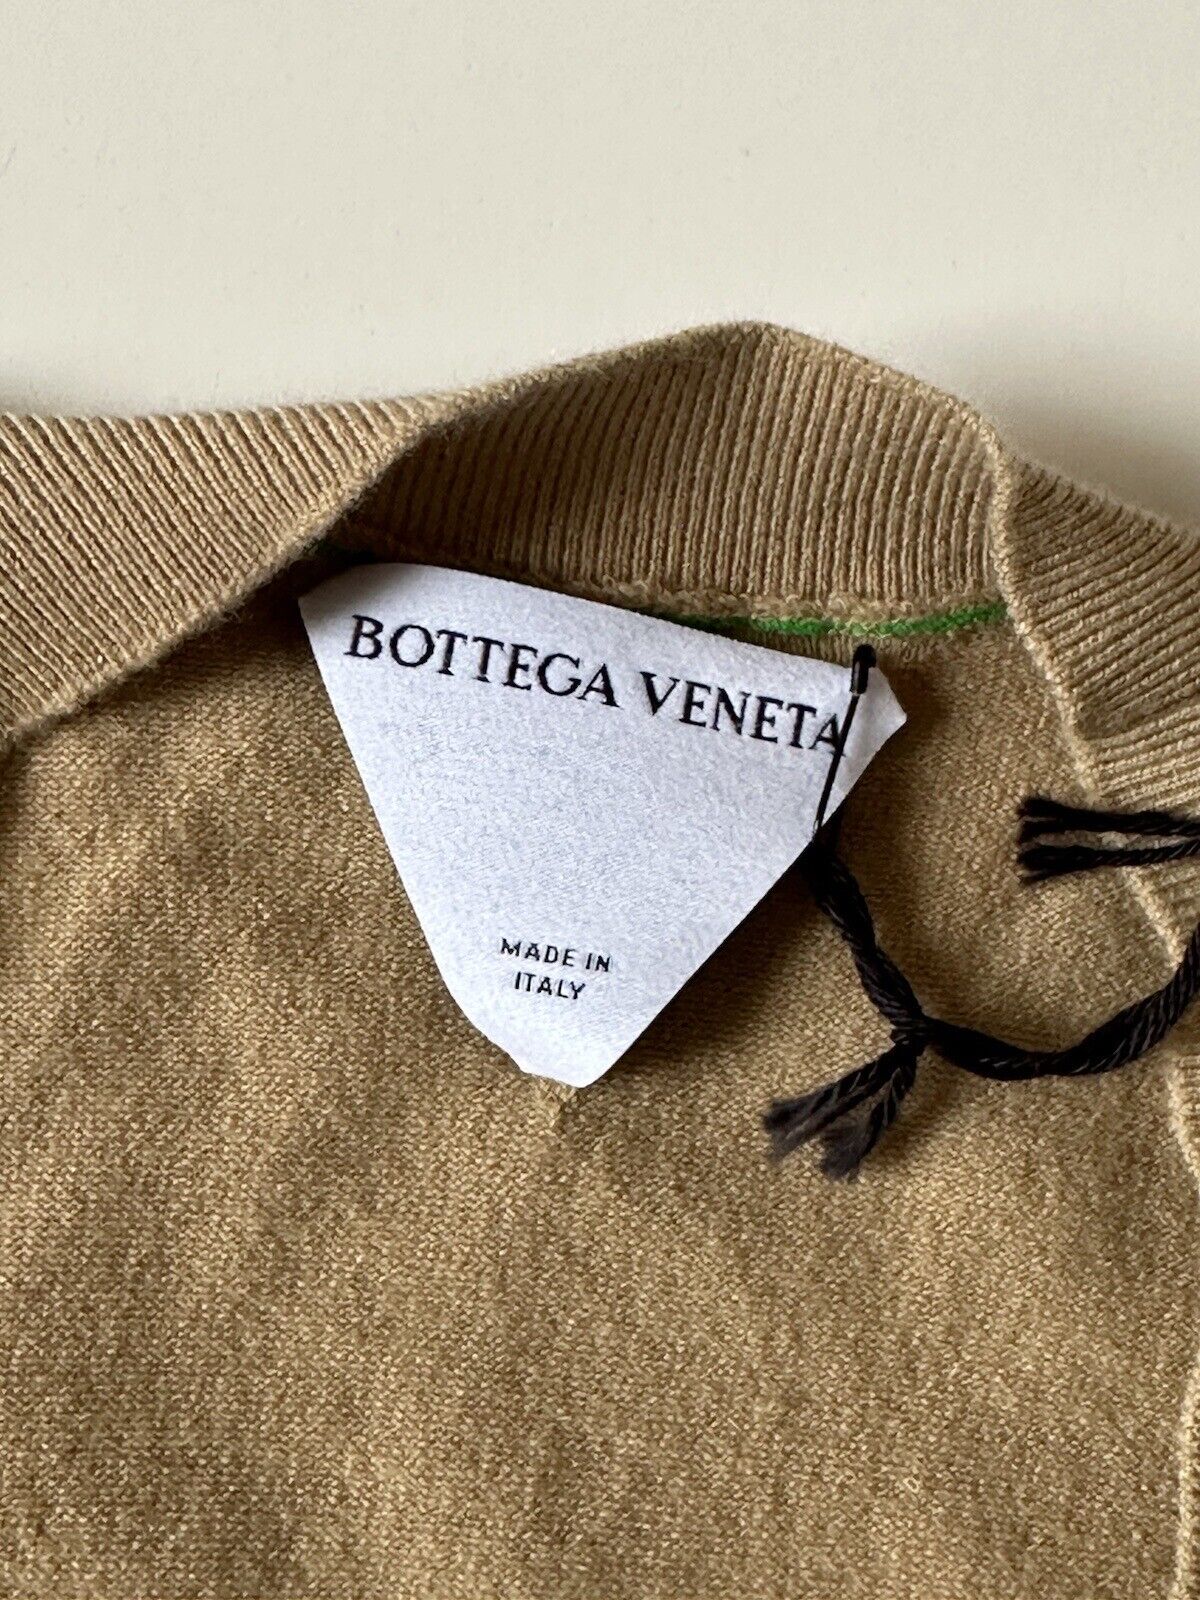 NWT $1200 Bottega Veneta Women's Cashmere Brown Top Size Small 690233 Italy